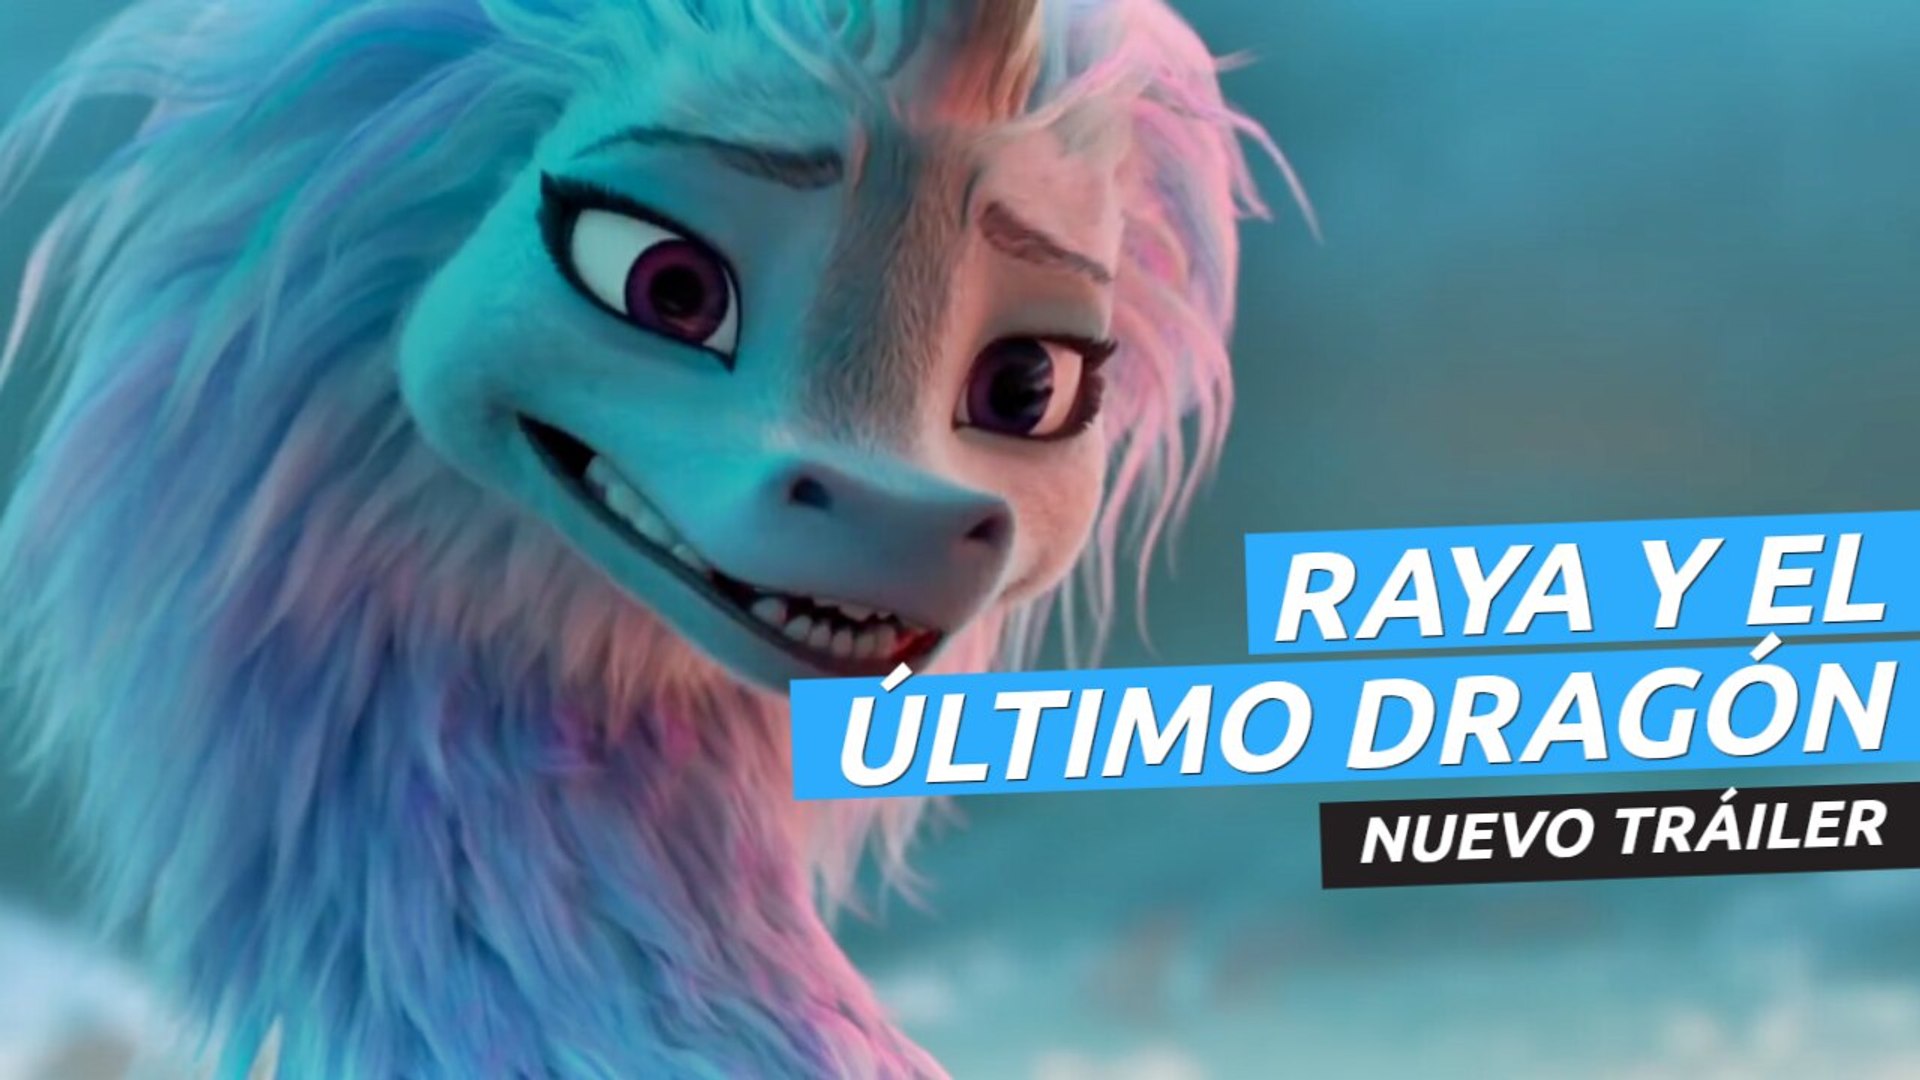 Nuevo tráiler de Raya y el último dragón - Vídeo Dailymotion